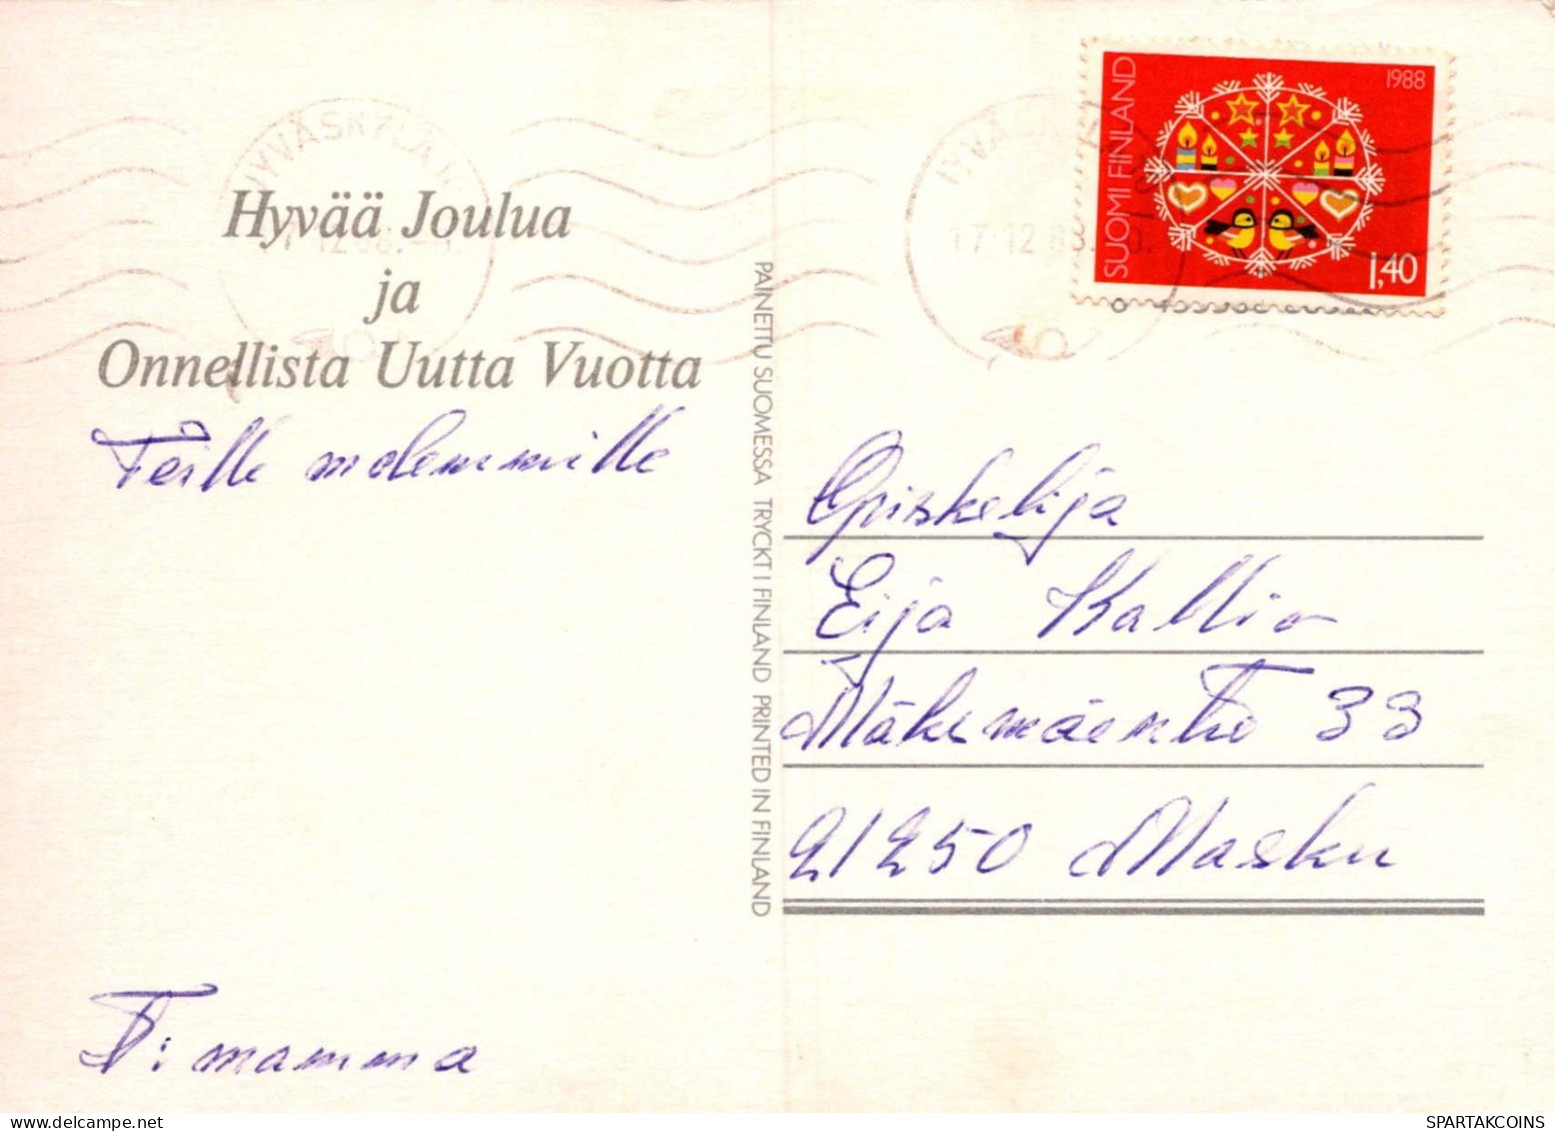 Buon Anno Natale CONIGLIO Vintage Cartolina CPSM #PAV039.A - Nieuwjaar